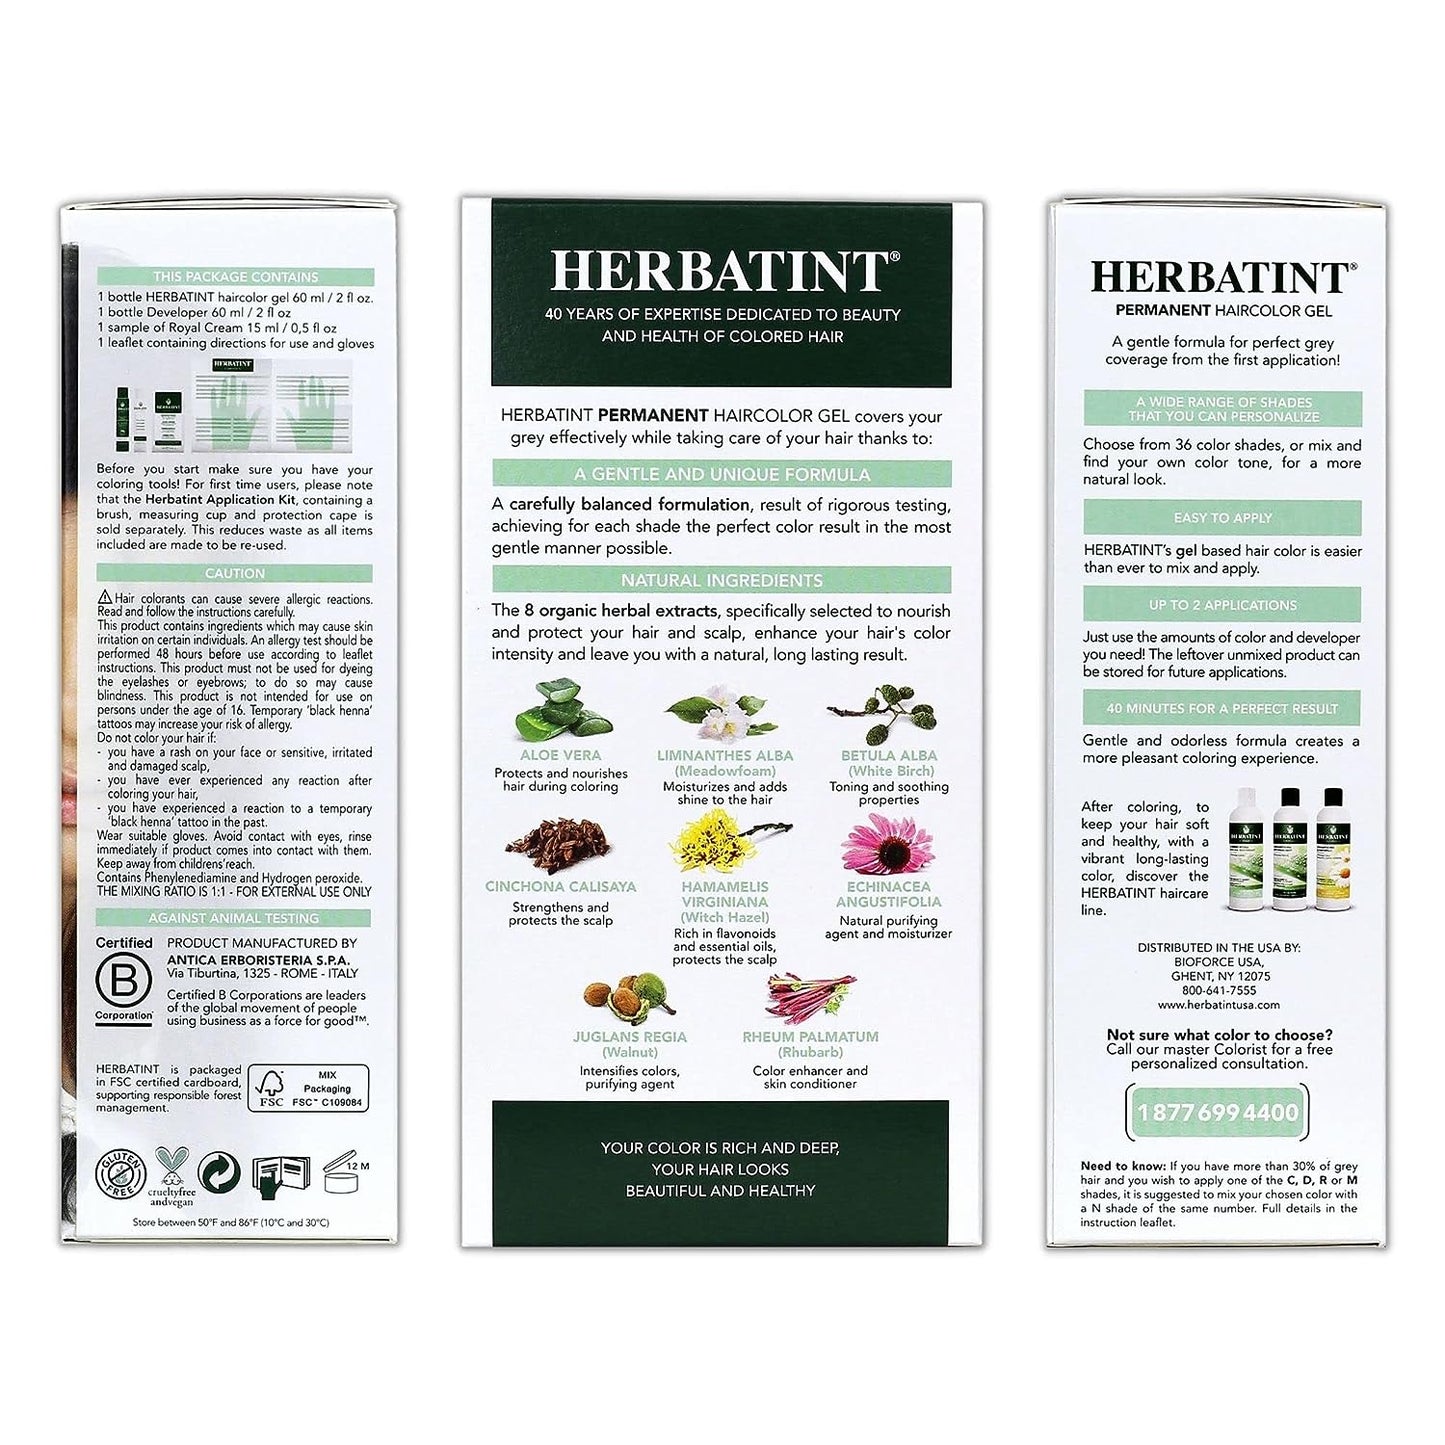 Herbatint 2N Brown